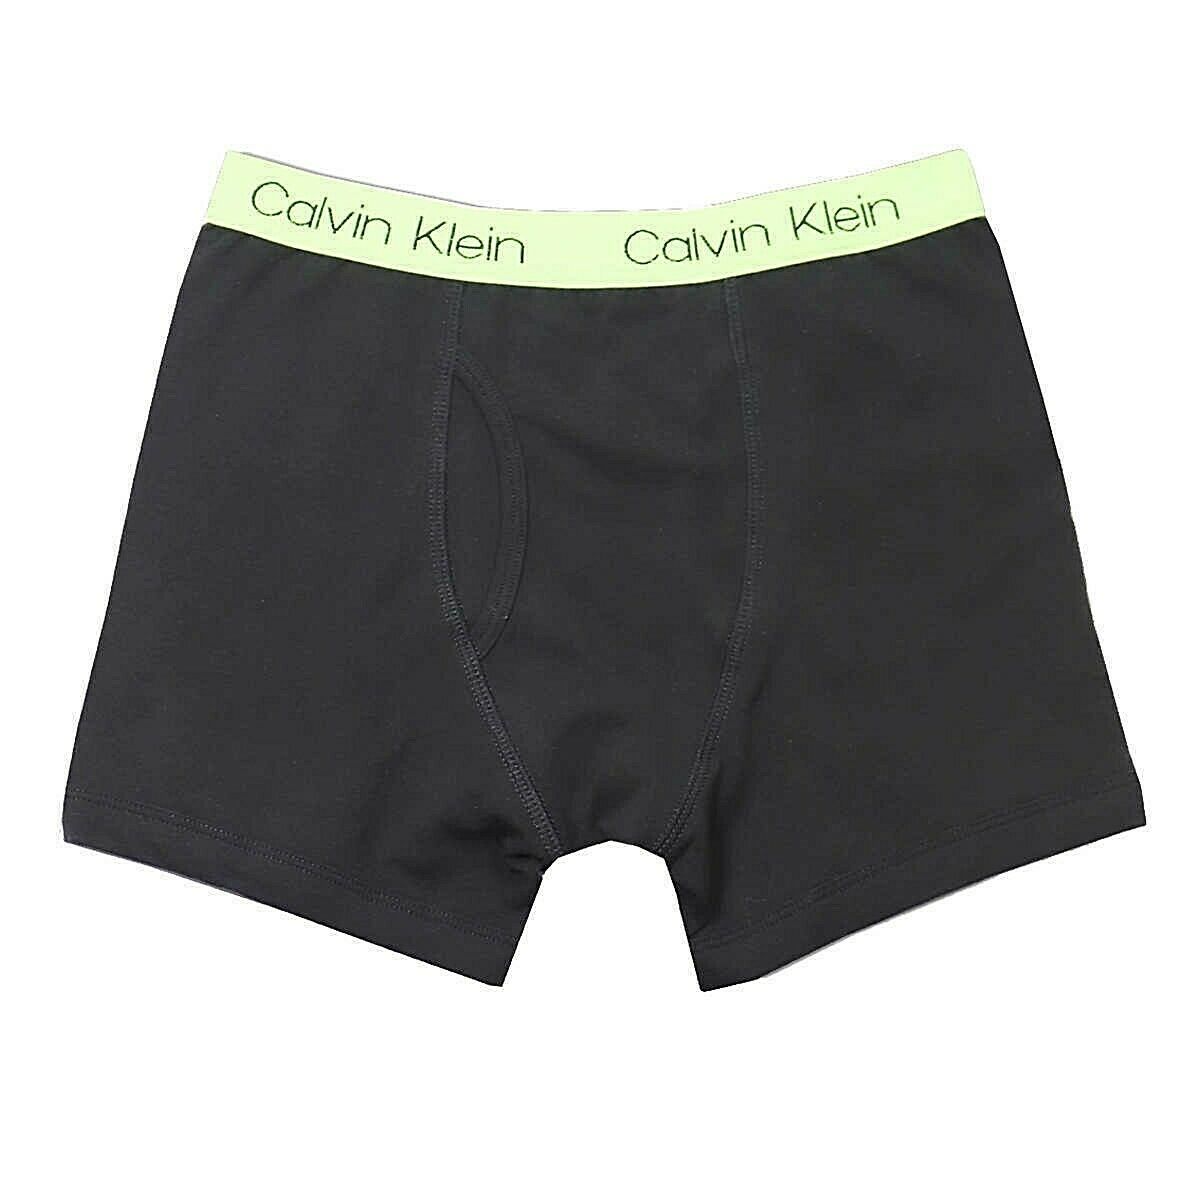 Calvin Klein Boys Boxer Brief Cotton Stretch Underwear